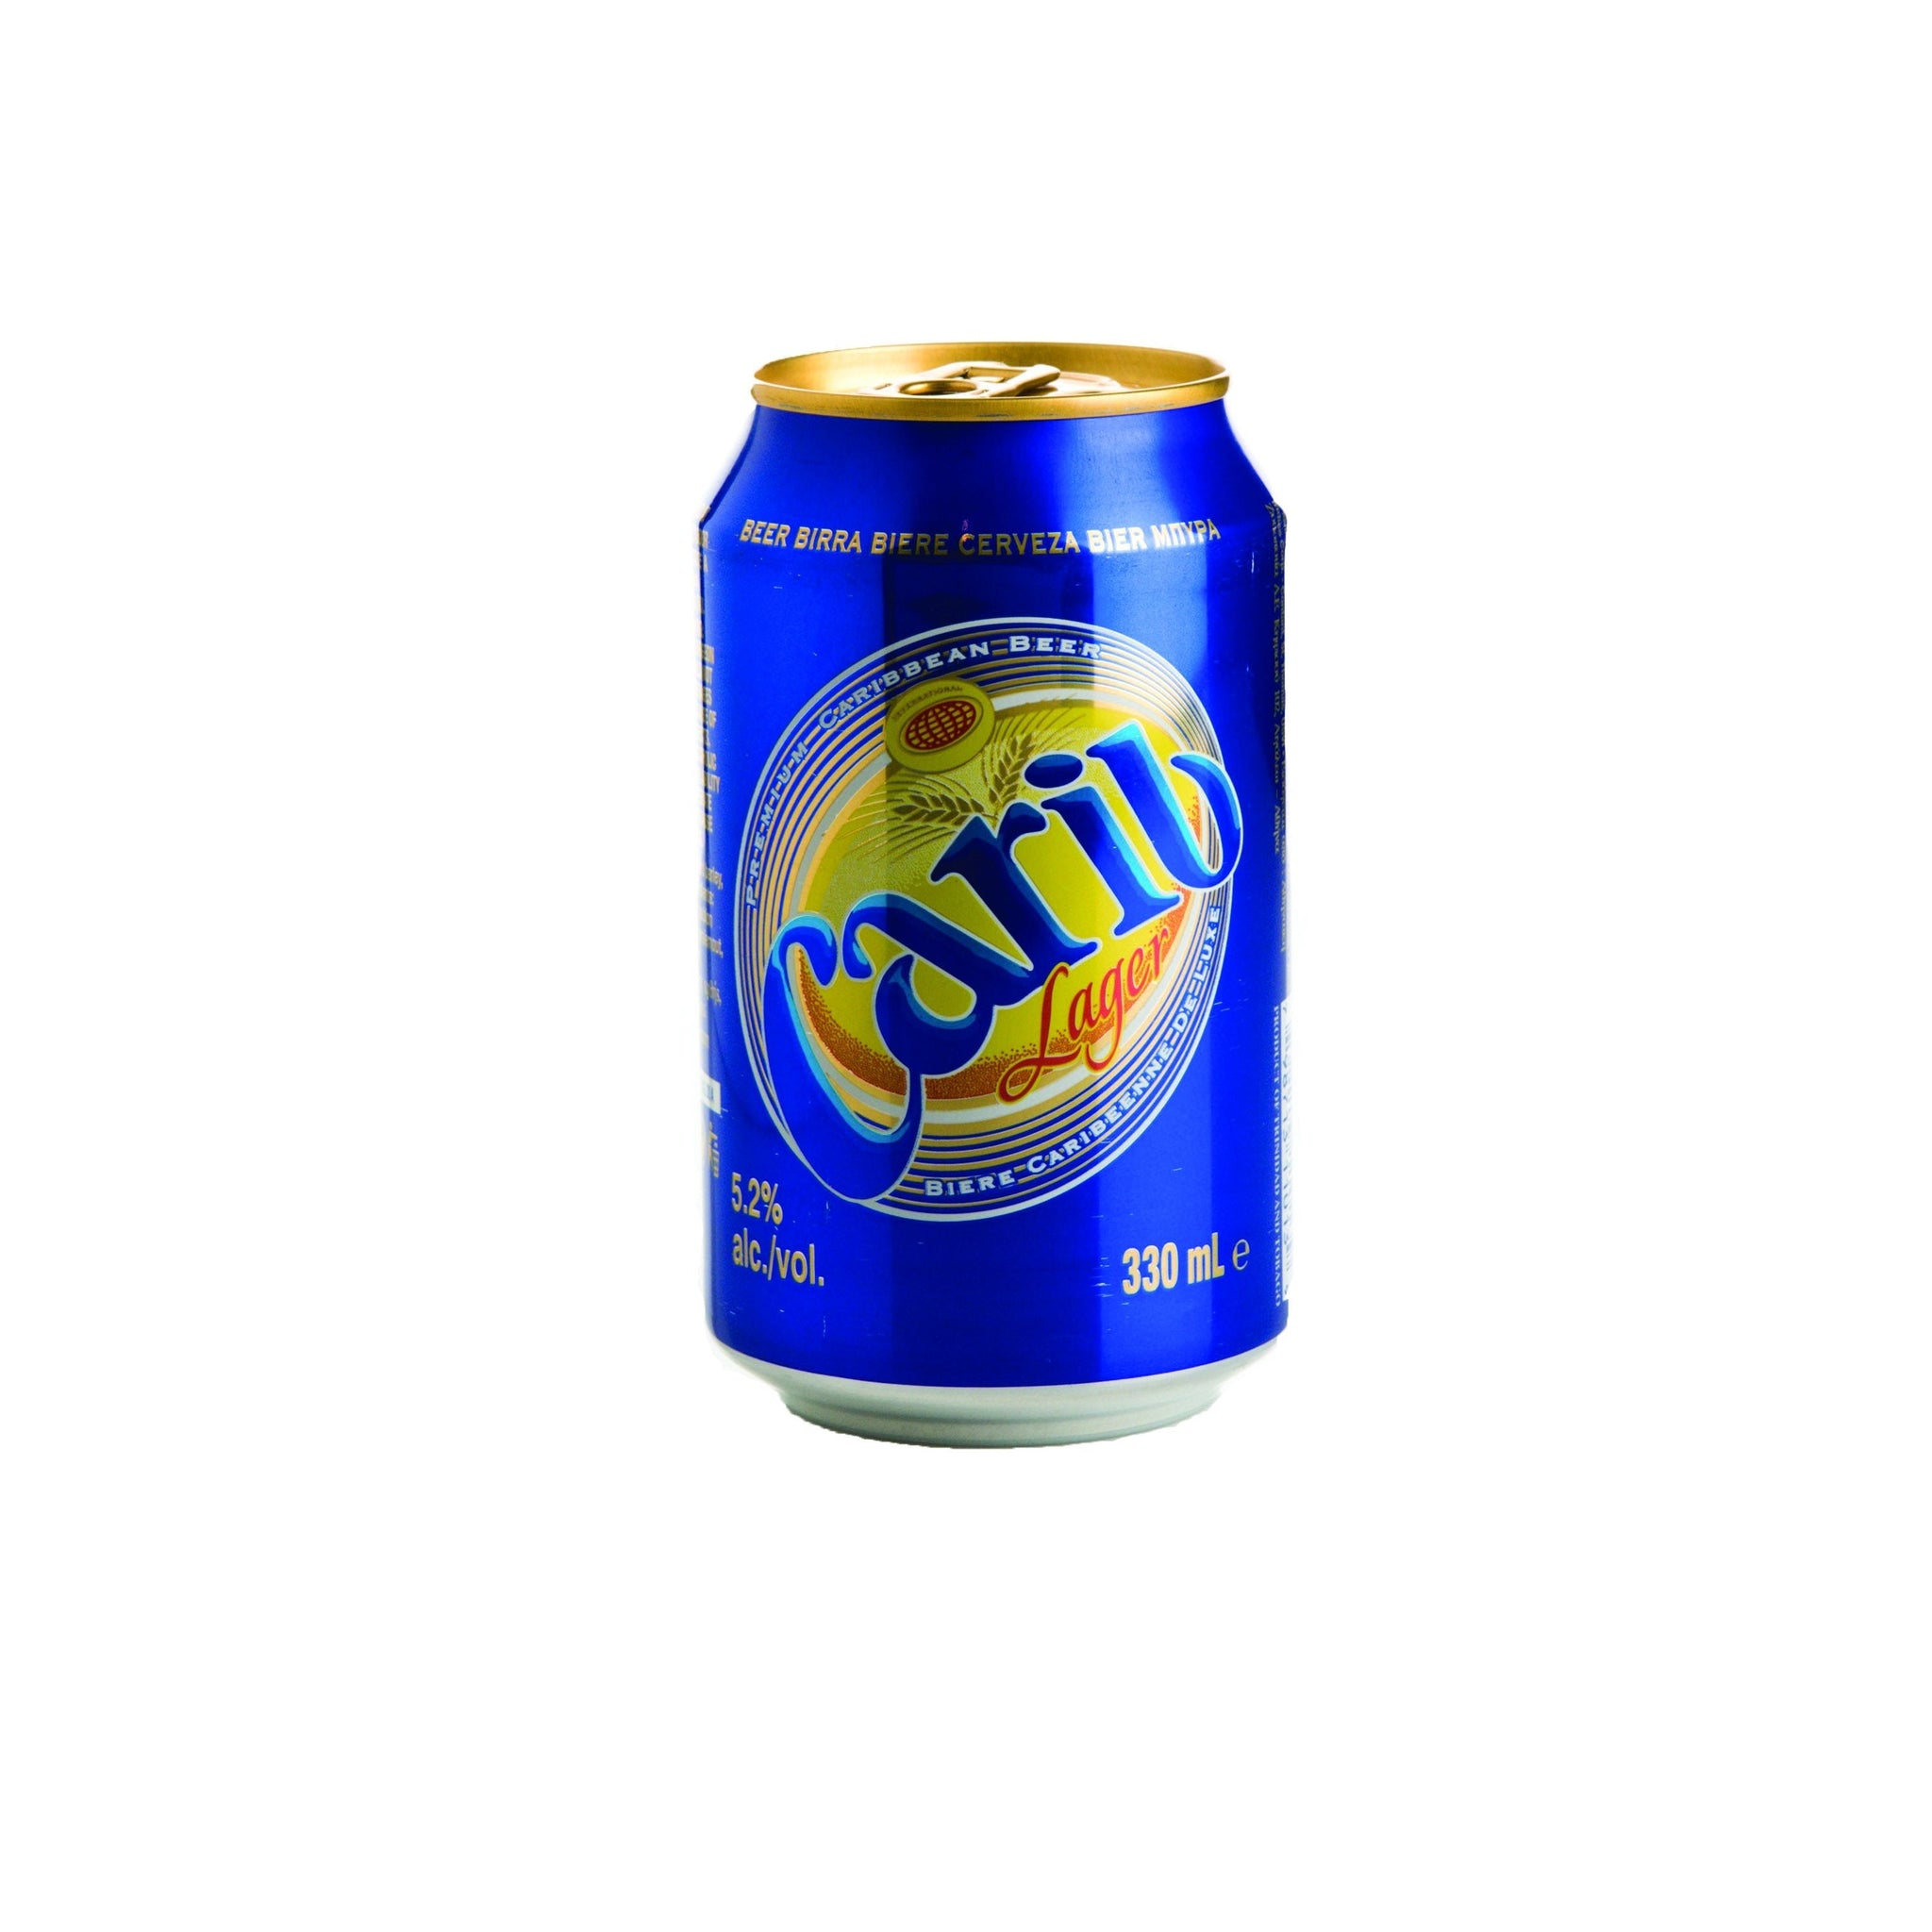 stm>Carib Beer, 6 pack